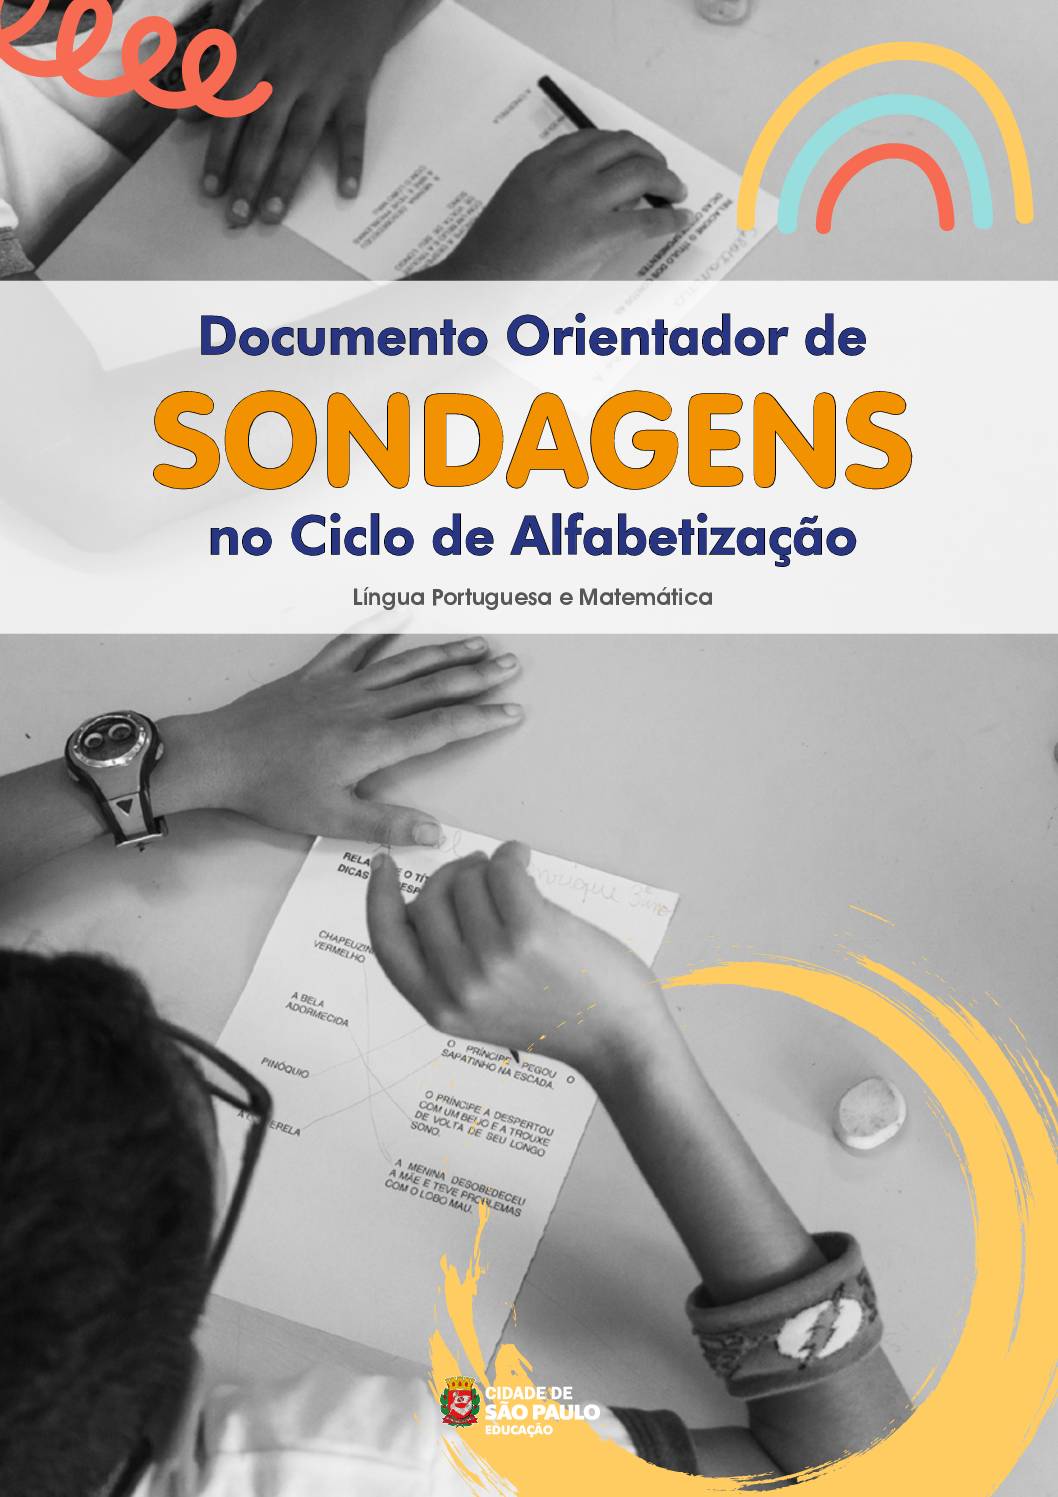 Este documento reúne orientações importantes a respeito das sondagens em Língua Portuguesa e Matemática no Ciclo de Alfabetização. Tem como objetivo orientar e fornecer subsídios para aplicação, análises e registros dos processos de aprendizagens dos estudantes.